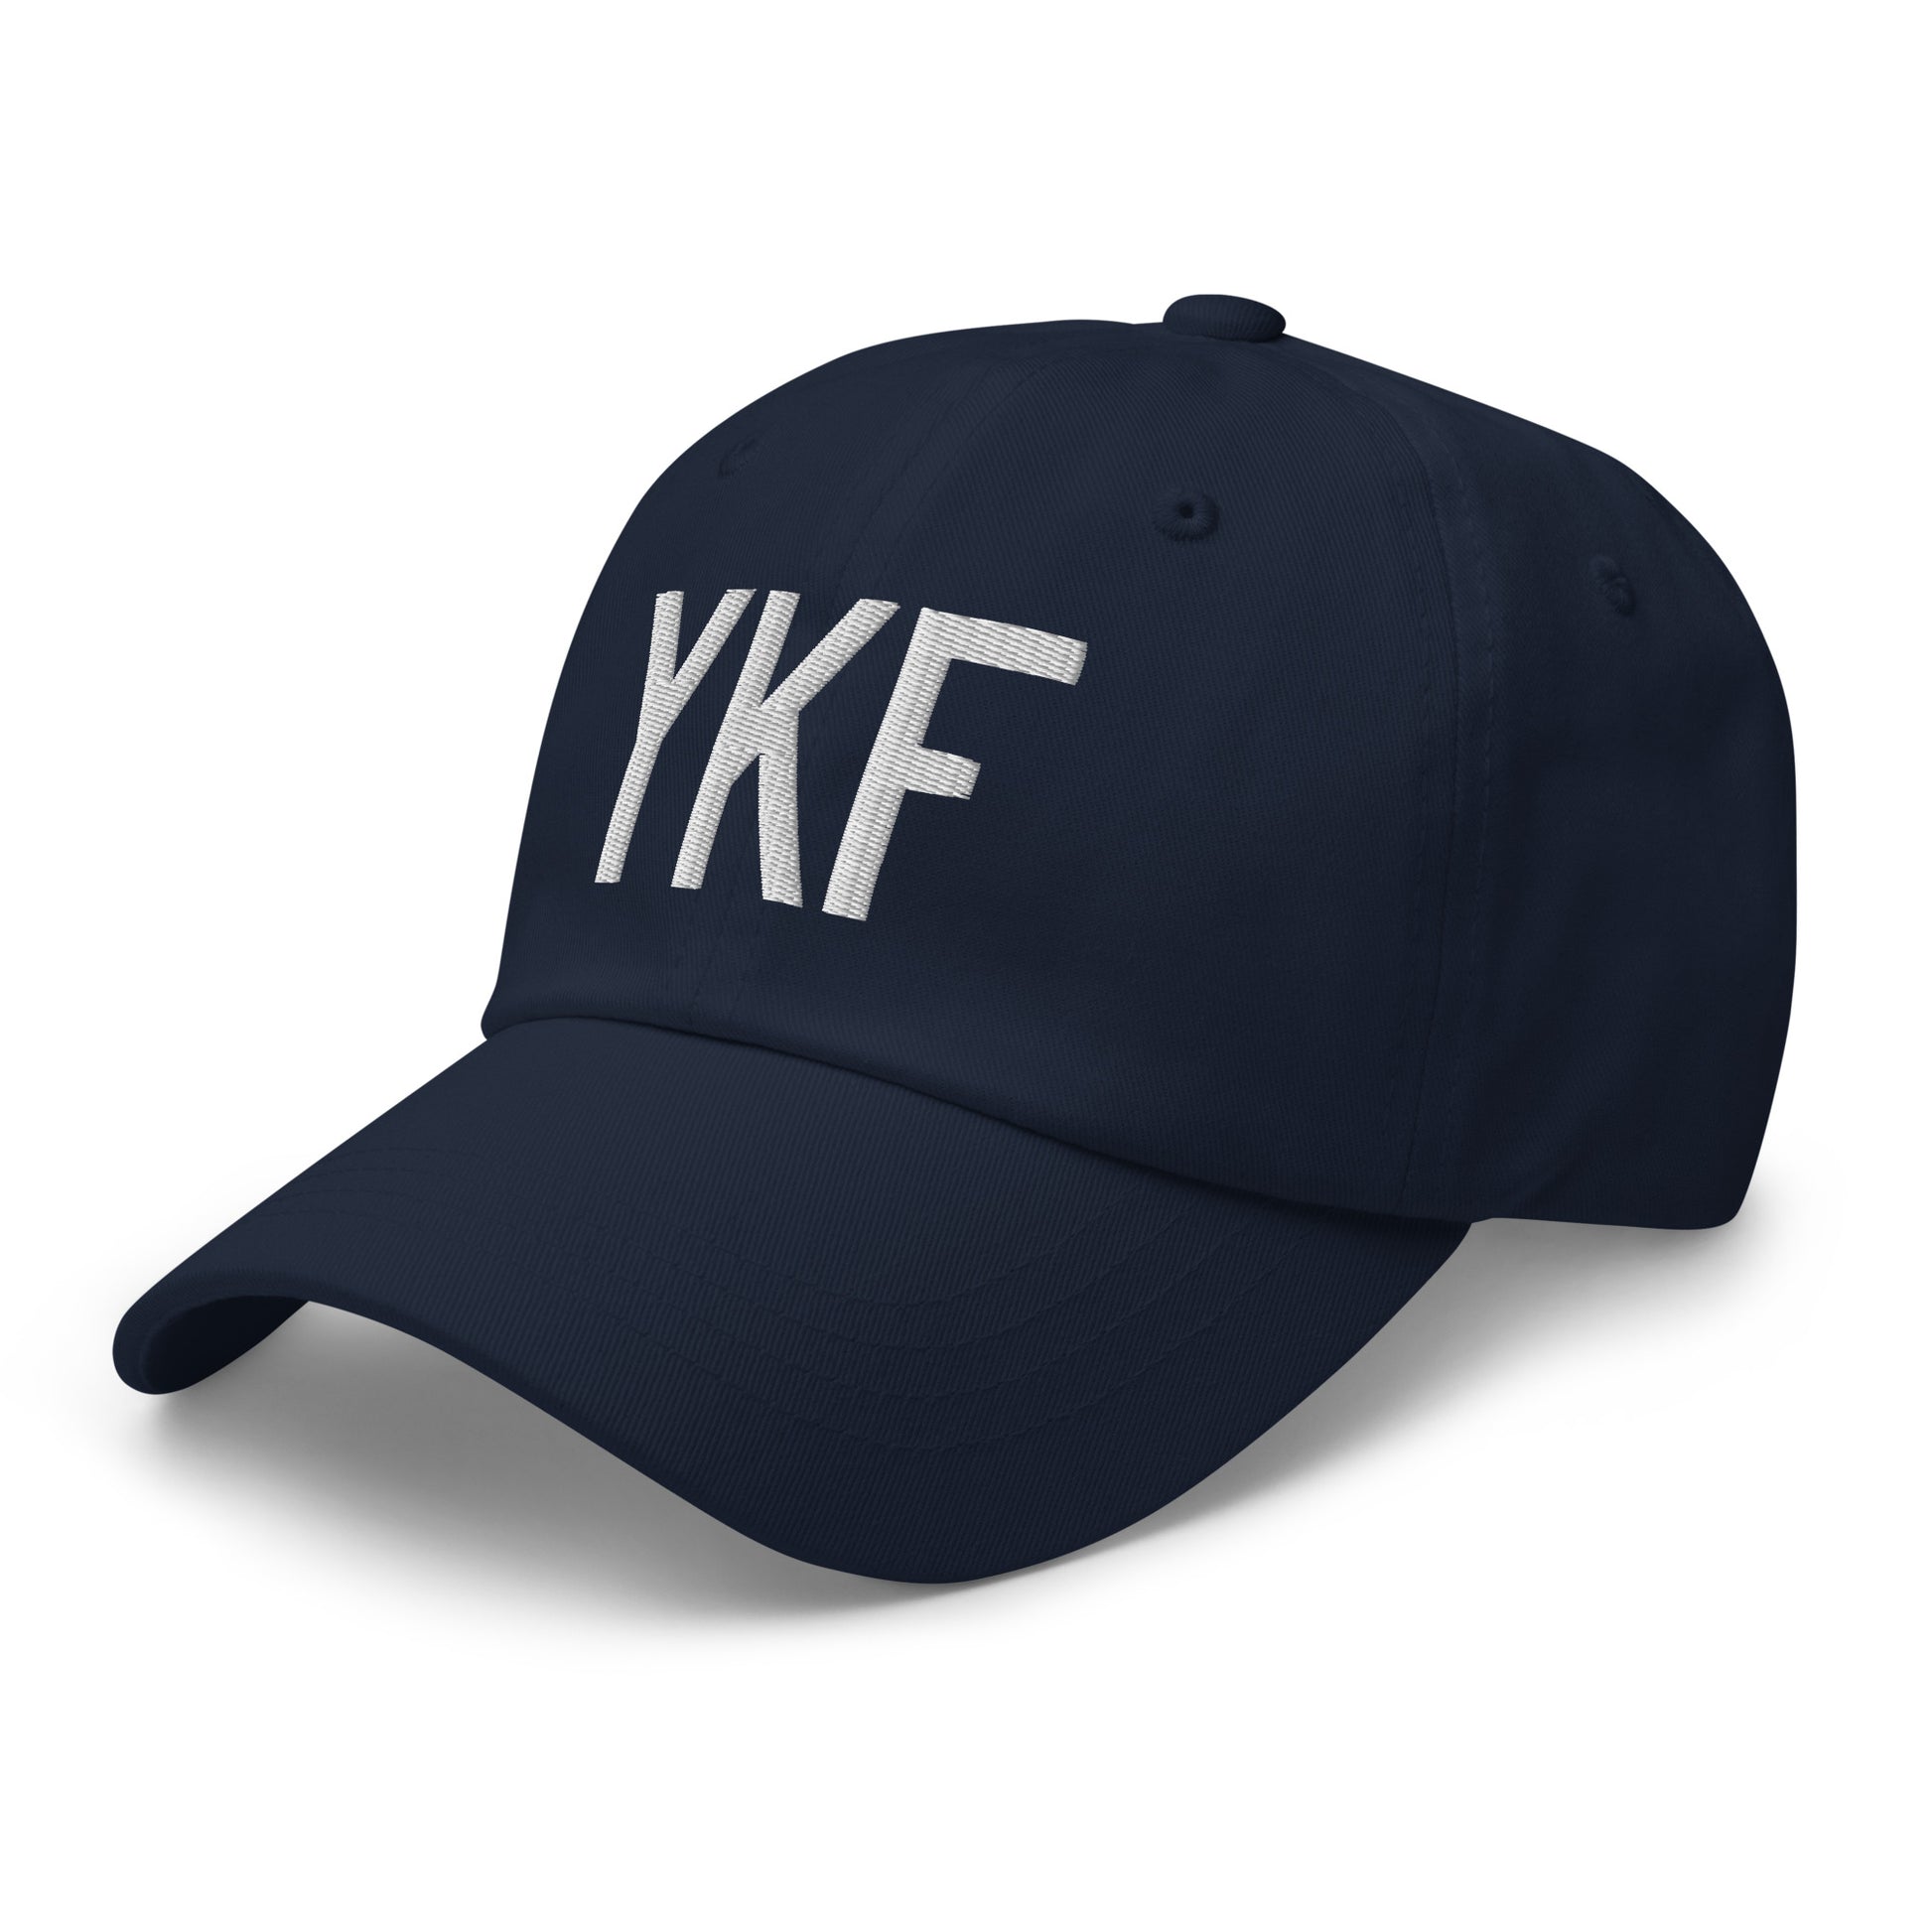 Airport Code Baseball Cap - White • YKF Waterloo • YHM Designs - Image 18